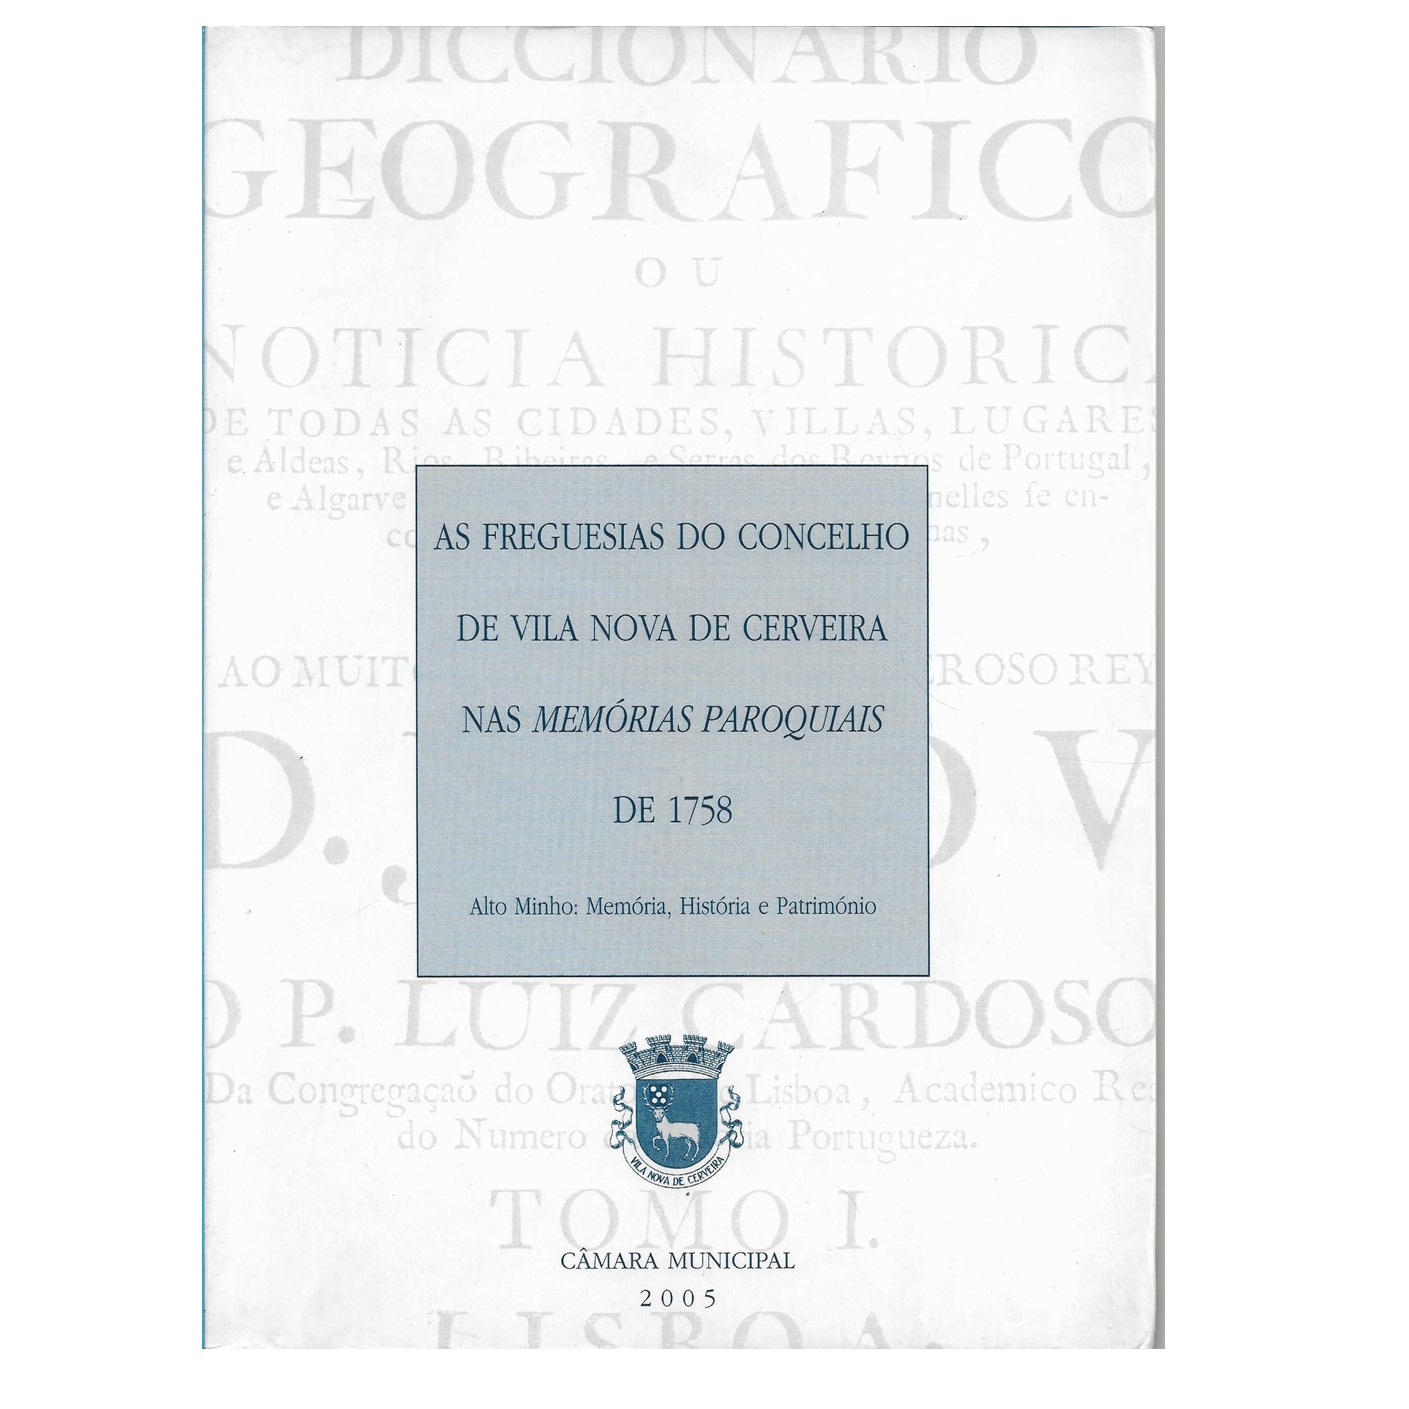 As Freguesias do Concelho de Vila Nova de Cerveira nas Memórias Paroquiais de 1758.